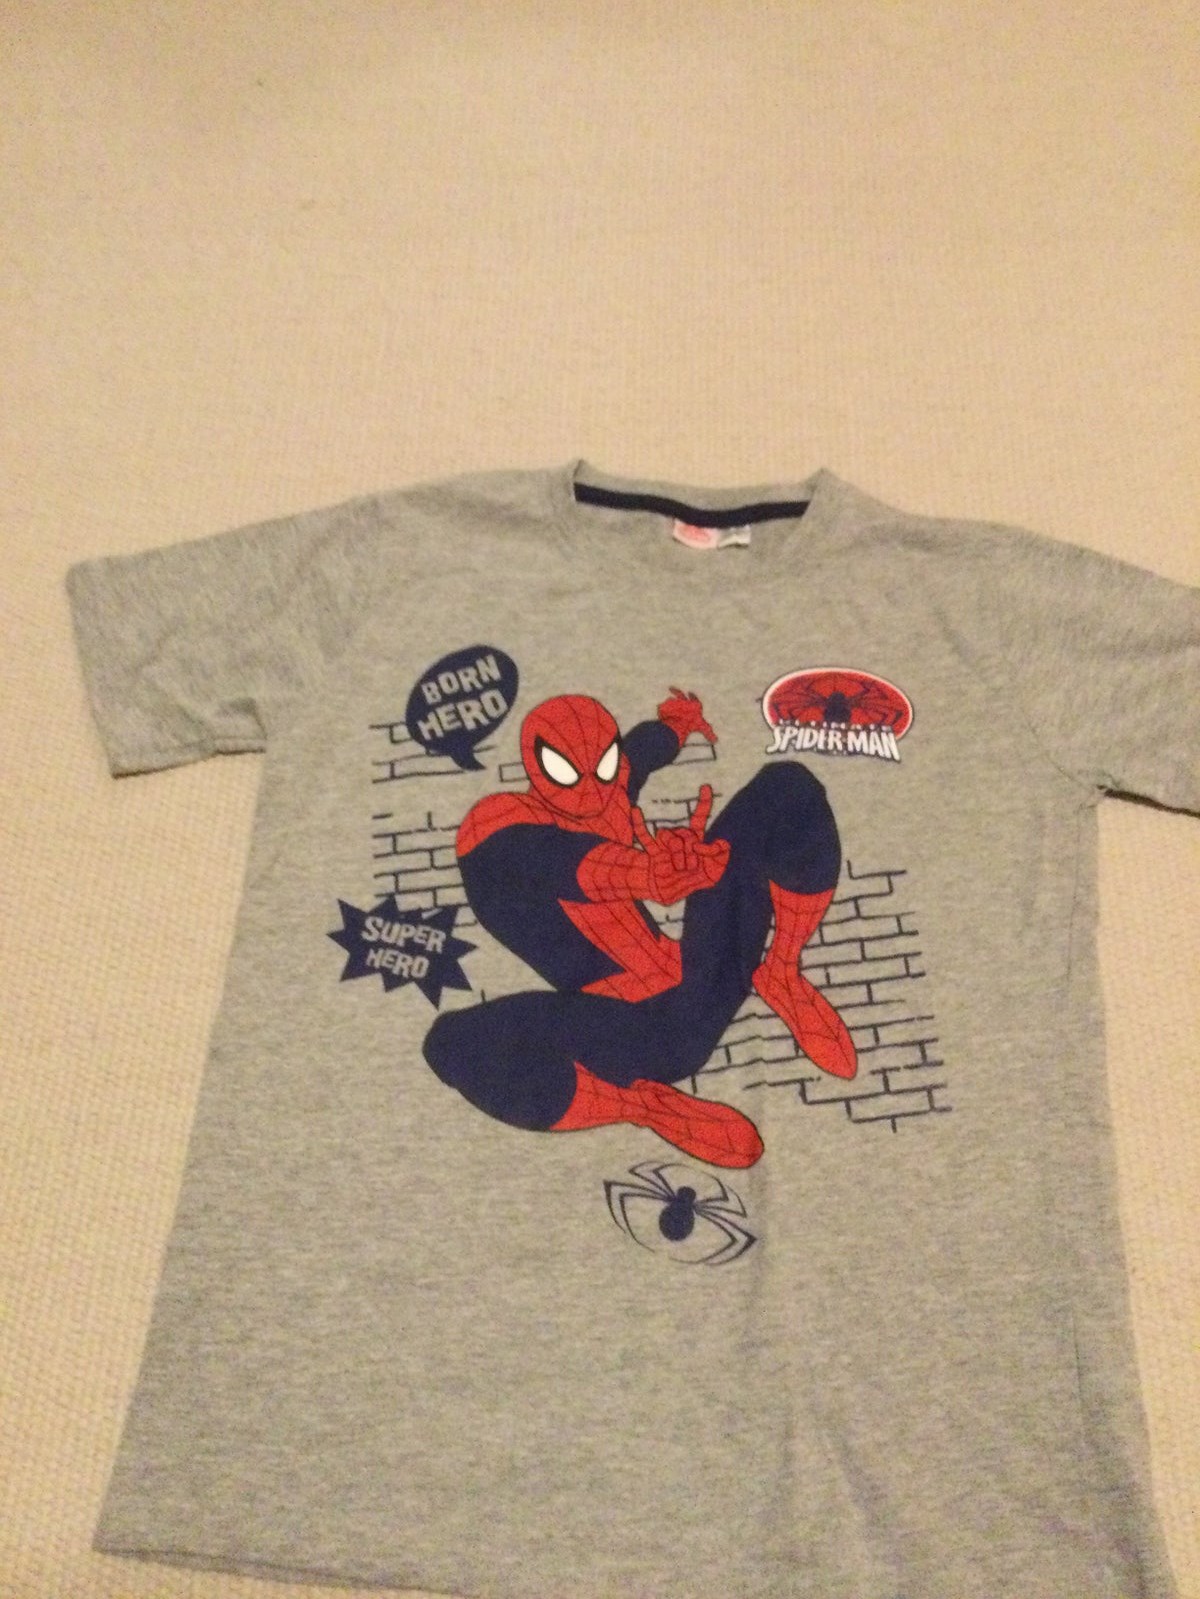 Er helten Spiderman, vil denne t-shirt til 25 kroner uden tvivl blive et hit. Den er kun brugt få gange, skriver Betinna fra Smørum.